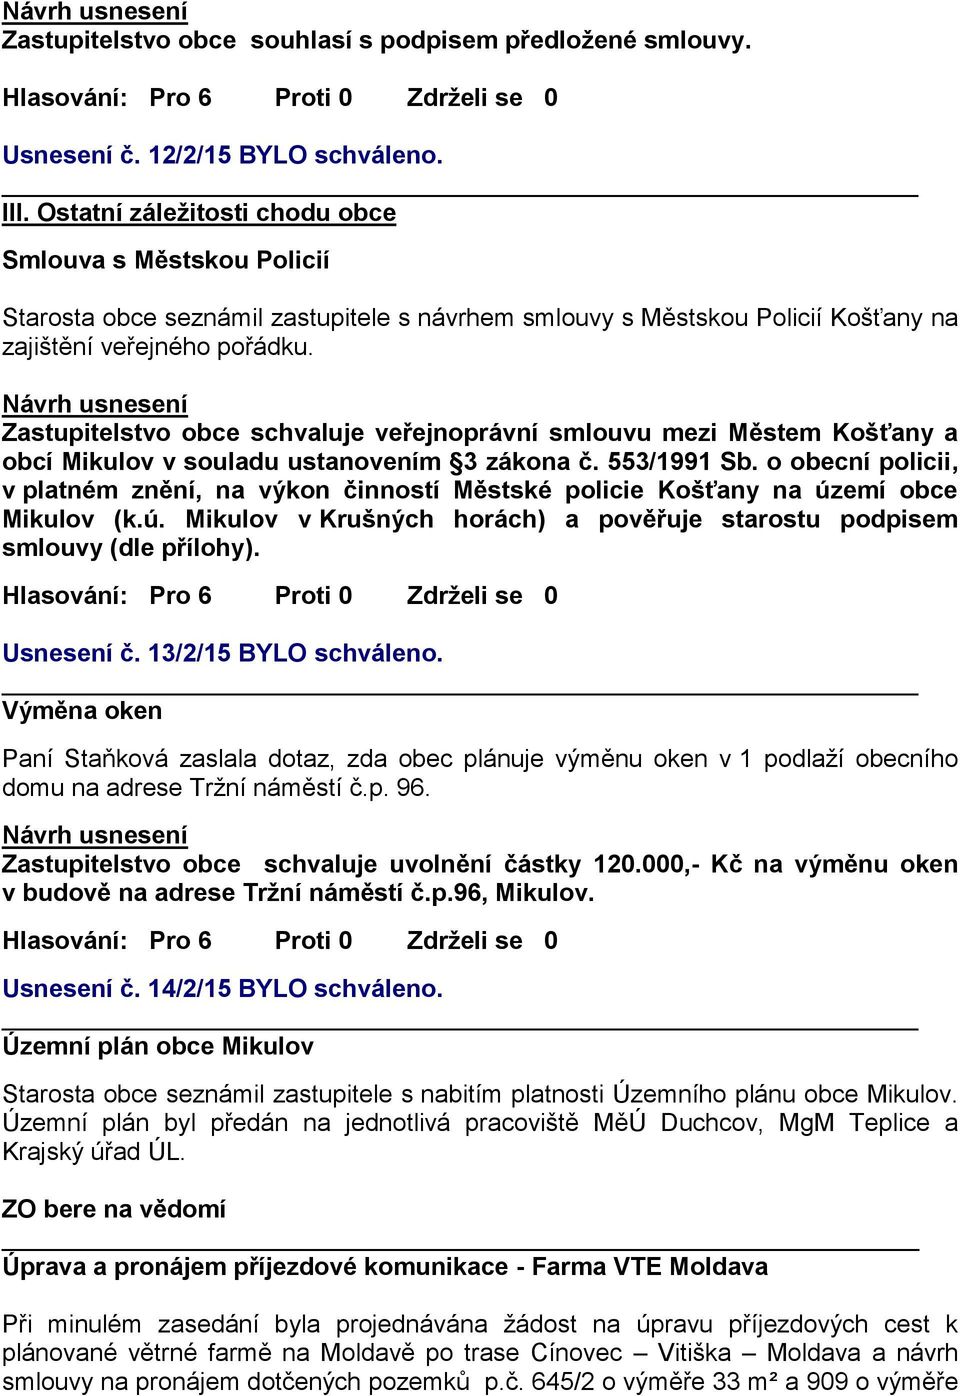 Zastupitelstvo obce schvaluje veřejnoprávní smlouvu mezi Městem Košťany a obcí Mikulov v souladu ustanovením 3 zákona č. 553/1991 Sb.